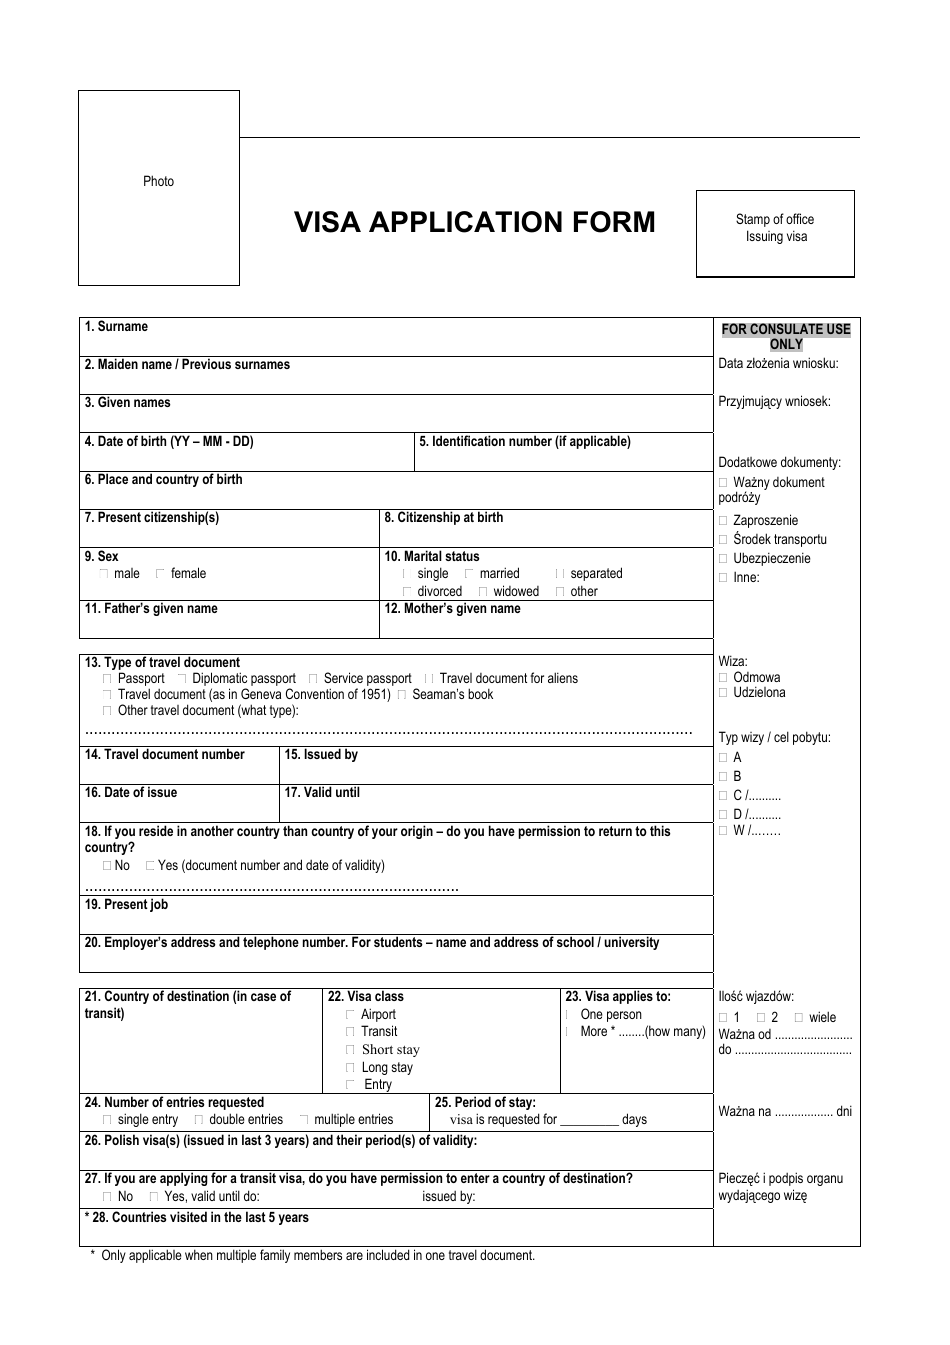 Schengen Visa Application Form - Poland, Page 1